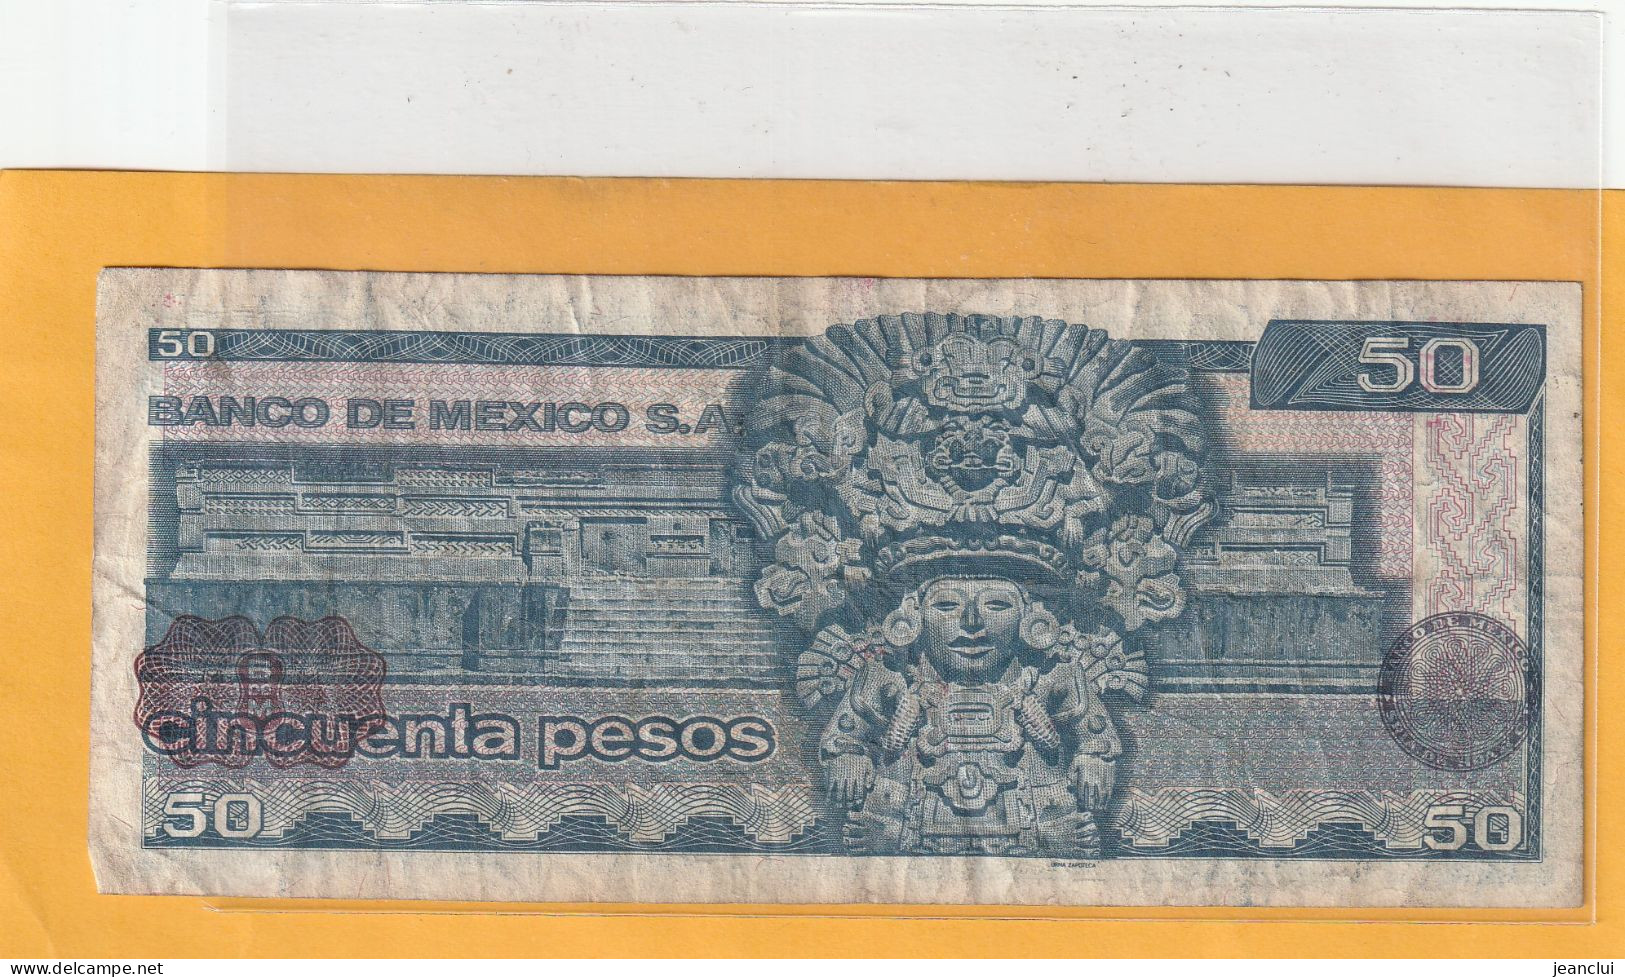 EL BANCO DE MEXICO S.A.  .  50 PESOS  .  27-1-1981  .  N°   H 5879878 .  2 SCANNES  .  BILLET TRES USITE - Mexique